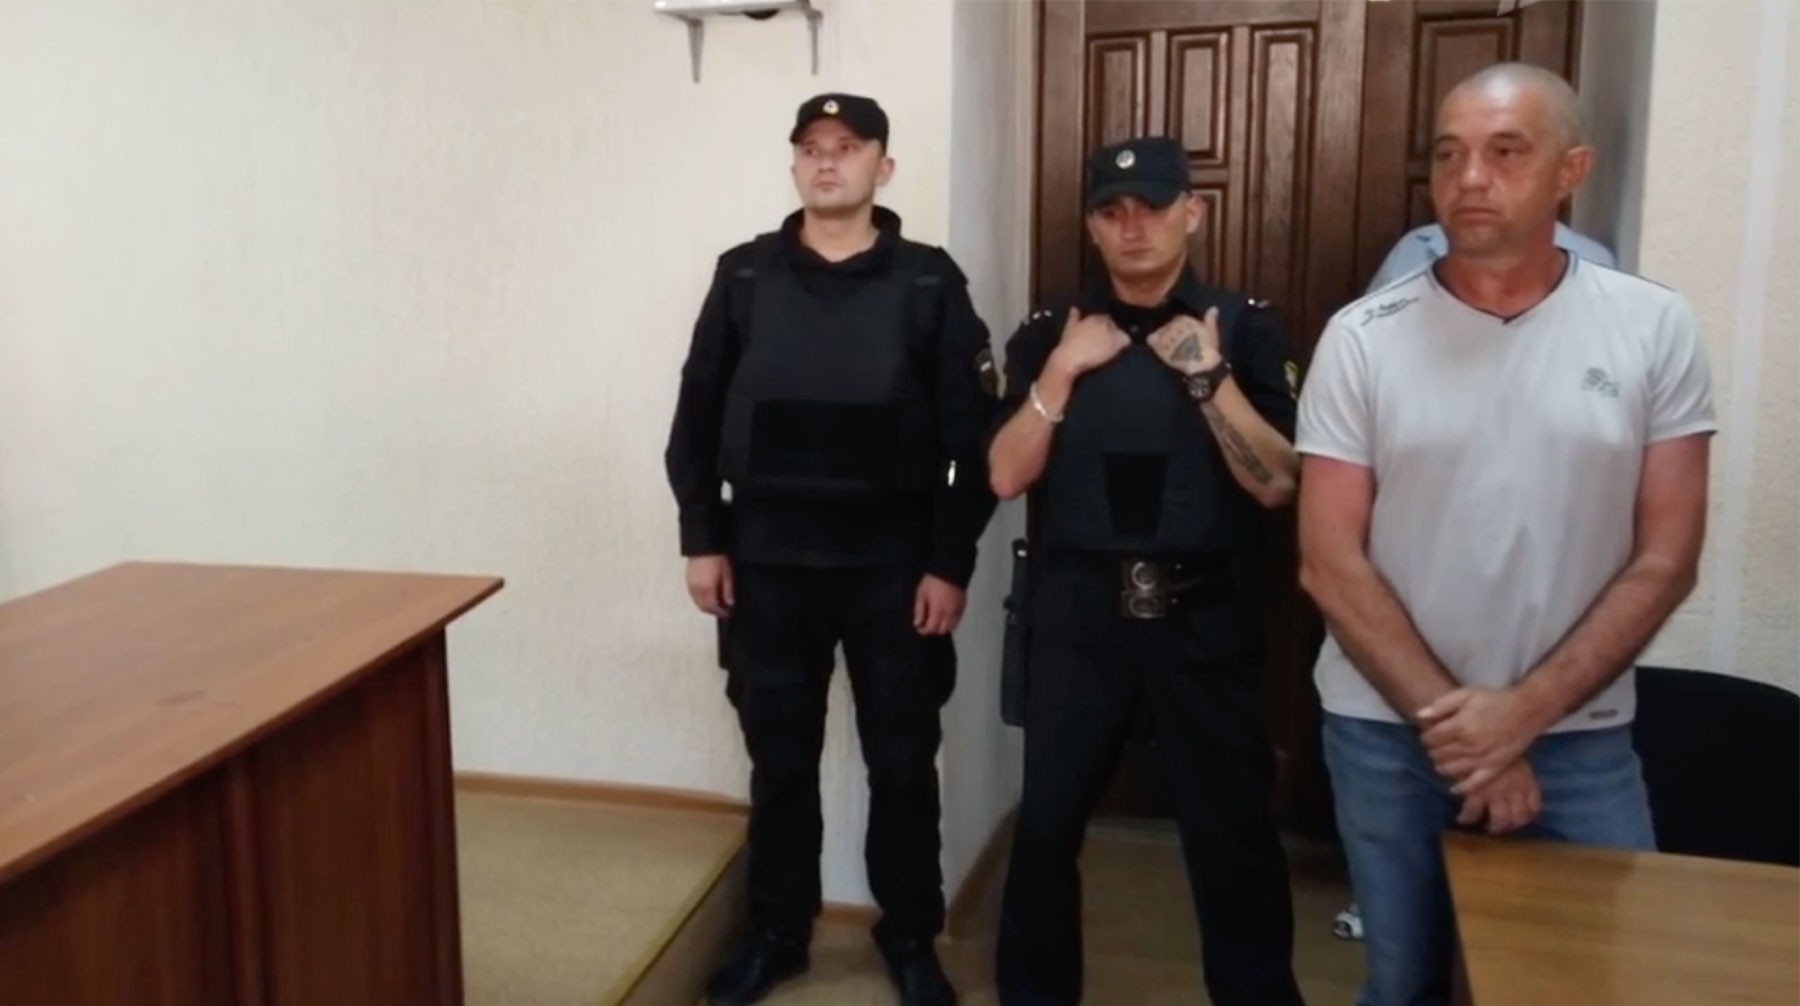 Dailystorm - Балаклавский районный суд освободил капитана украинского судна «ЯМК-0041»